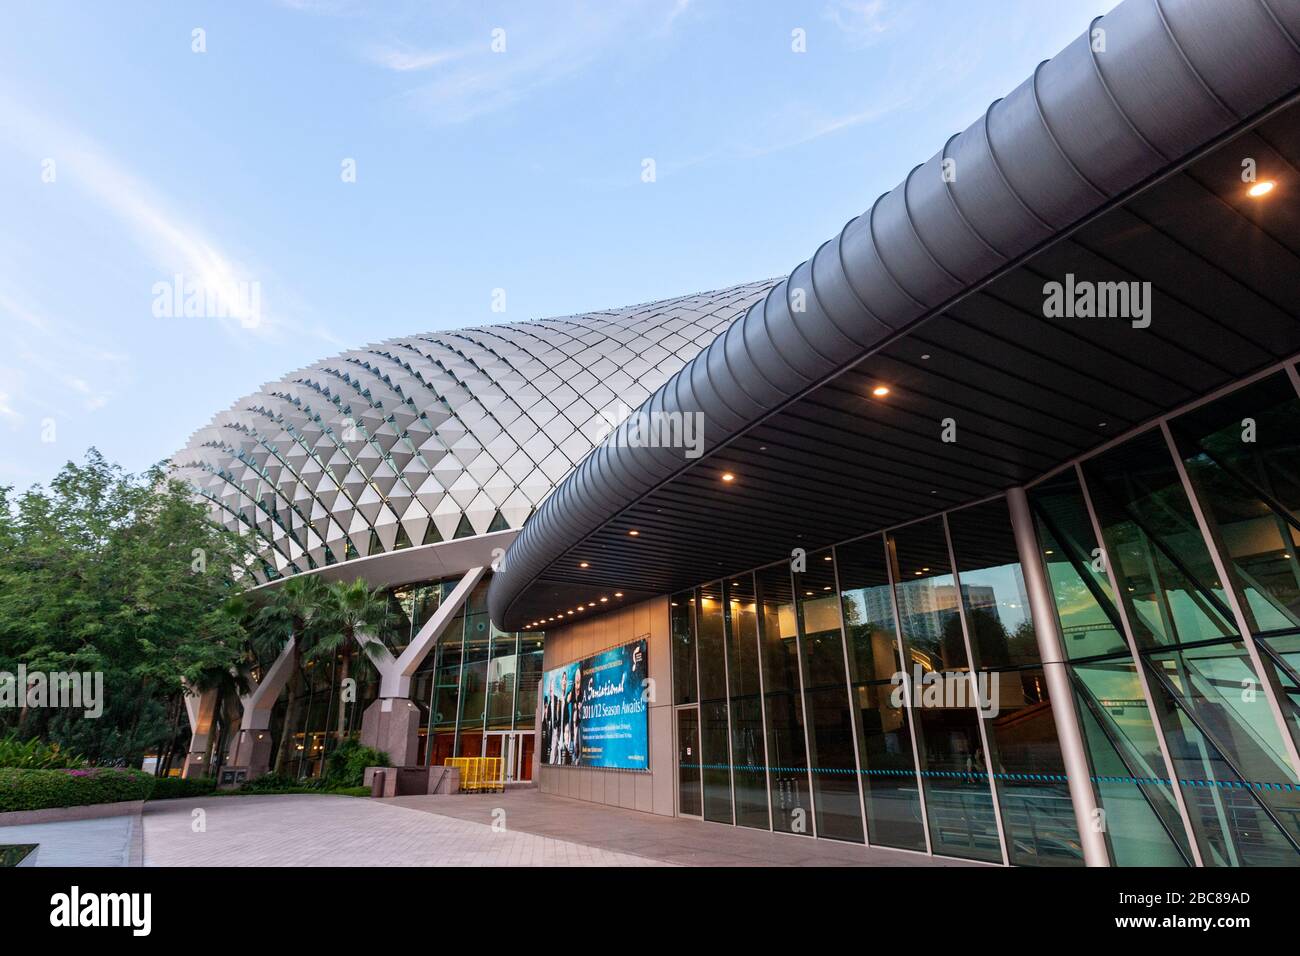 Entrée de l'Esplanade - théâtres sur la baie, Singapour Banque D'Images